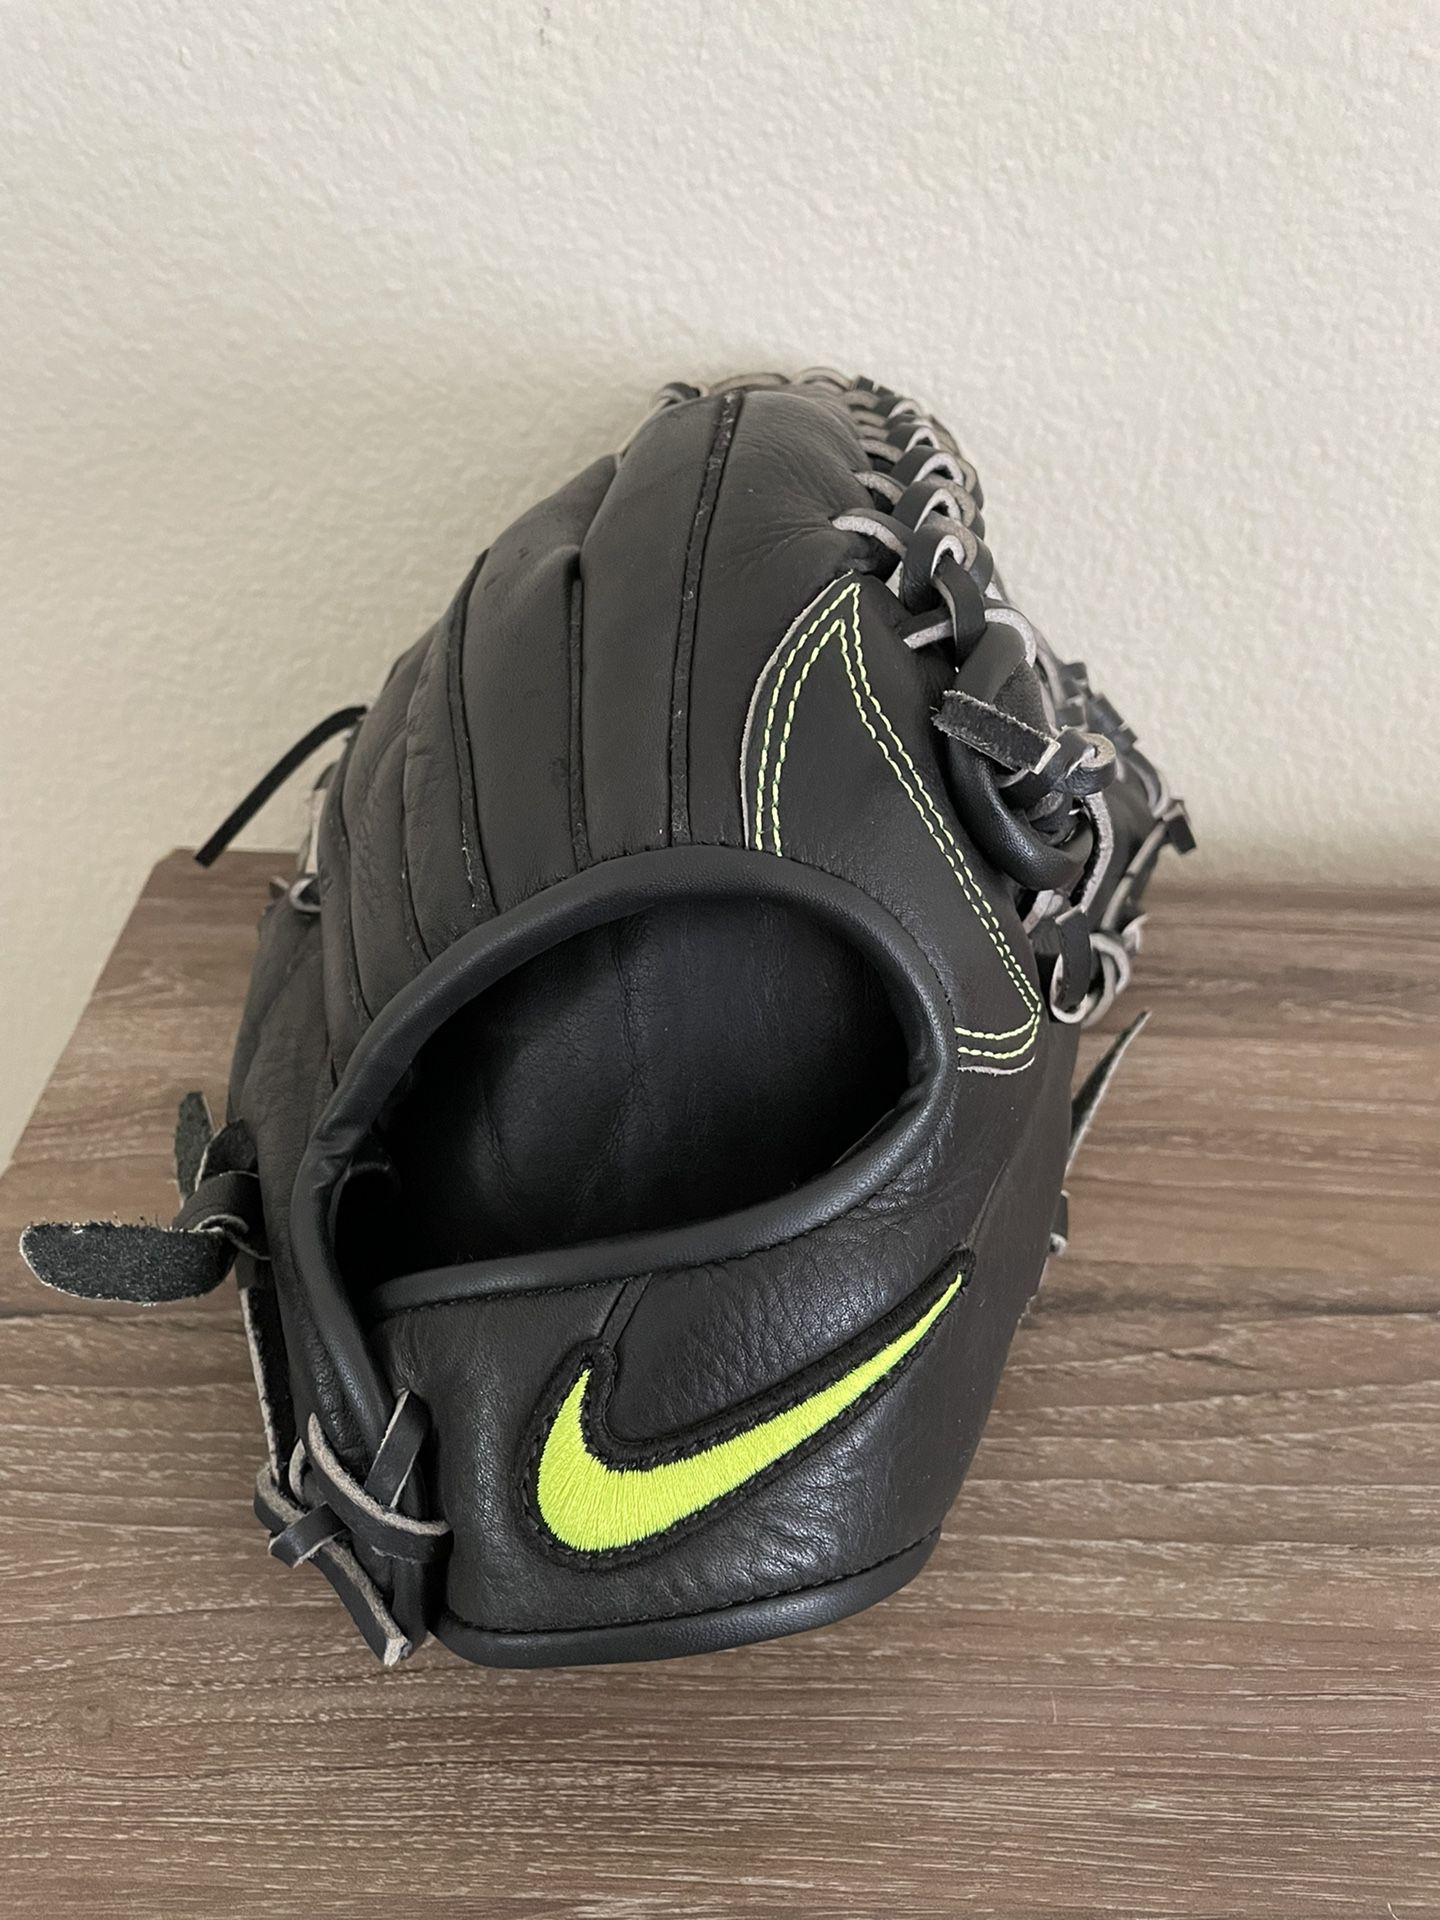 Nike Sha/Do 12.5 Baseball Glove $100 FIRM